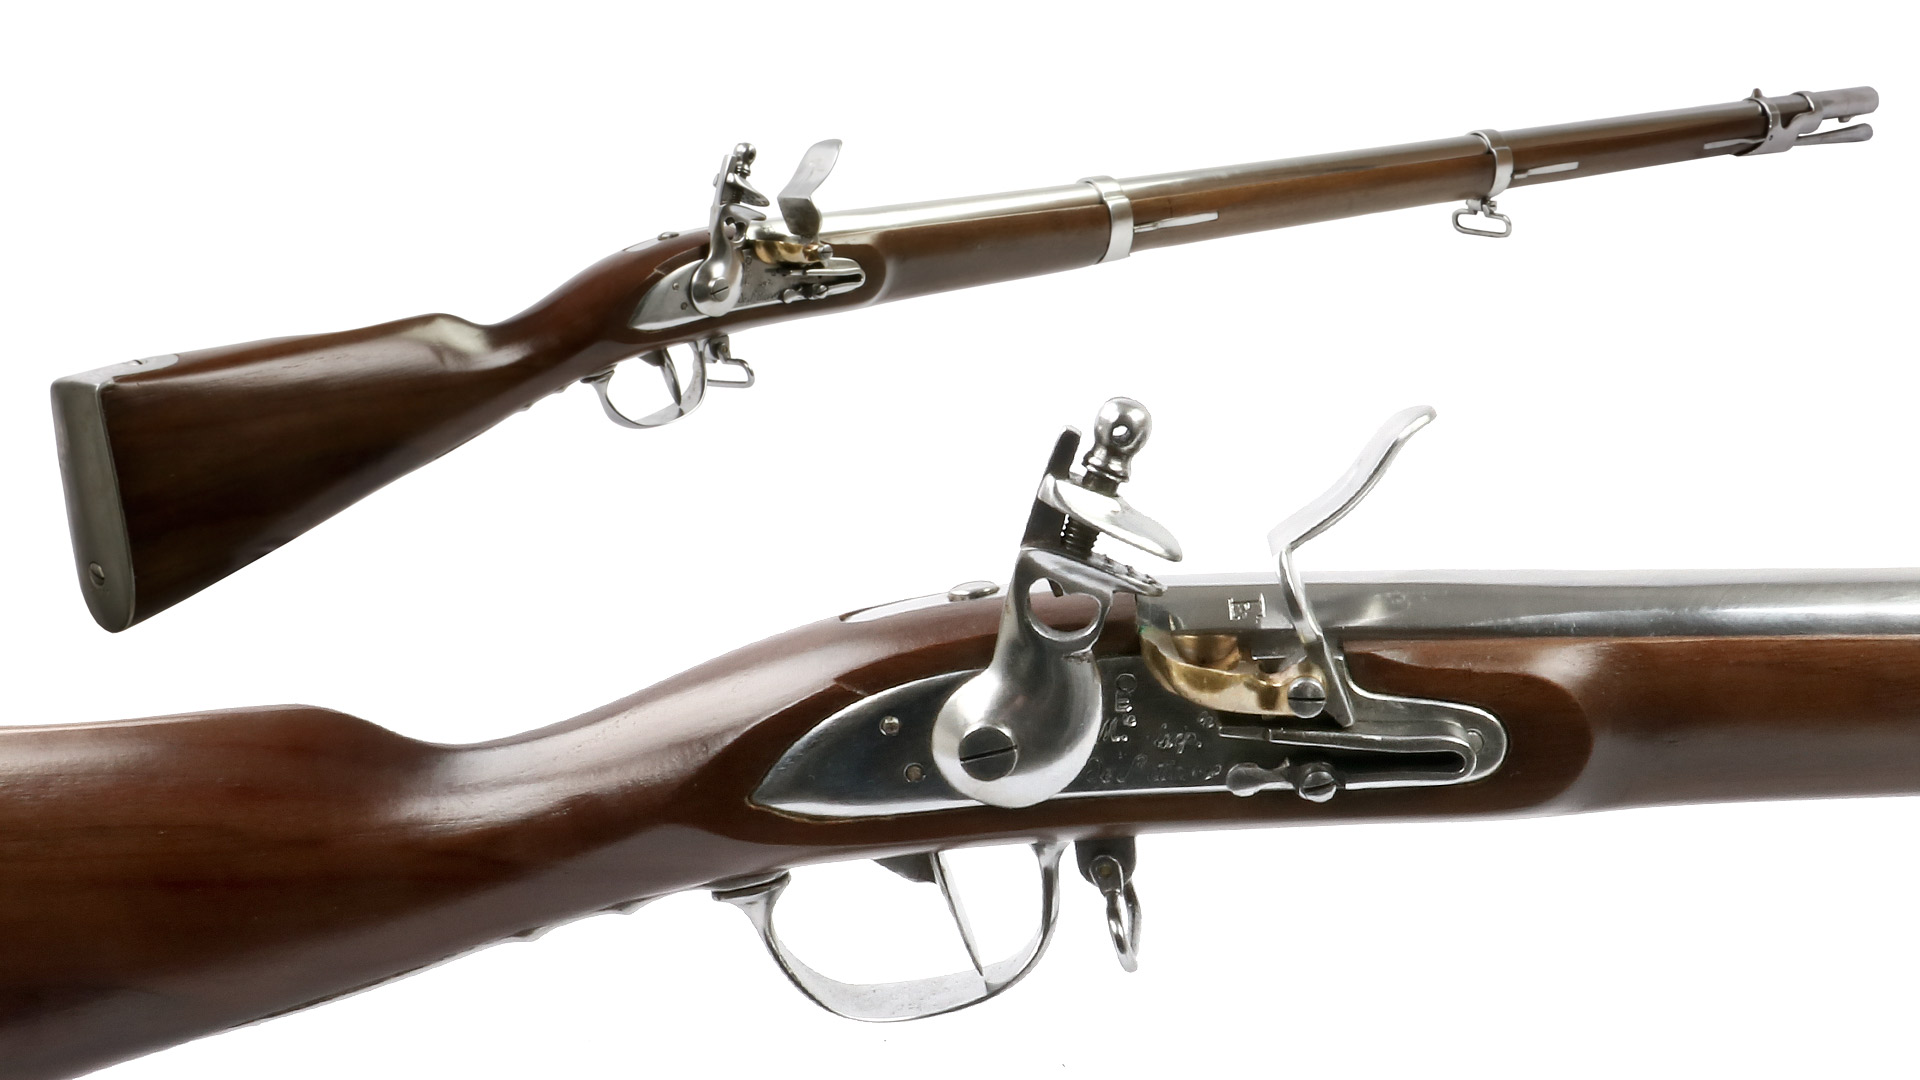 Vorderlader Steinschlossgewehr 1777 Revolutionnaire French Infantry Musket, Kaliber .69 bzw. 17,5 mm (P18)